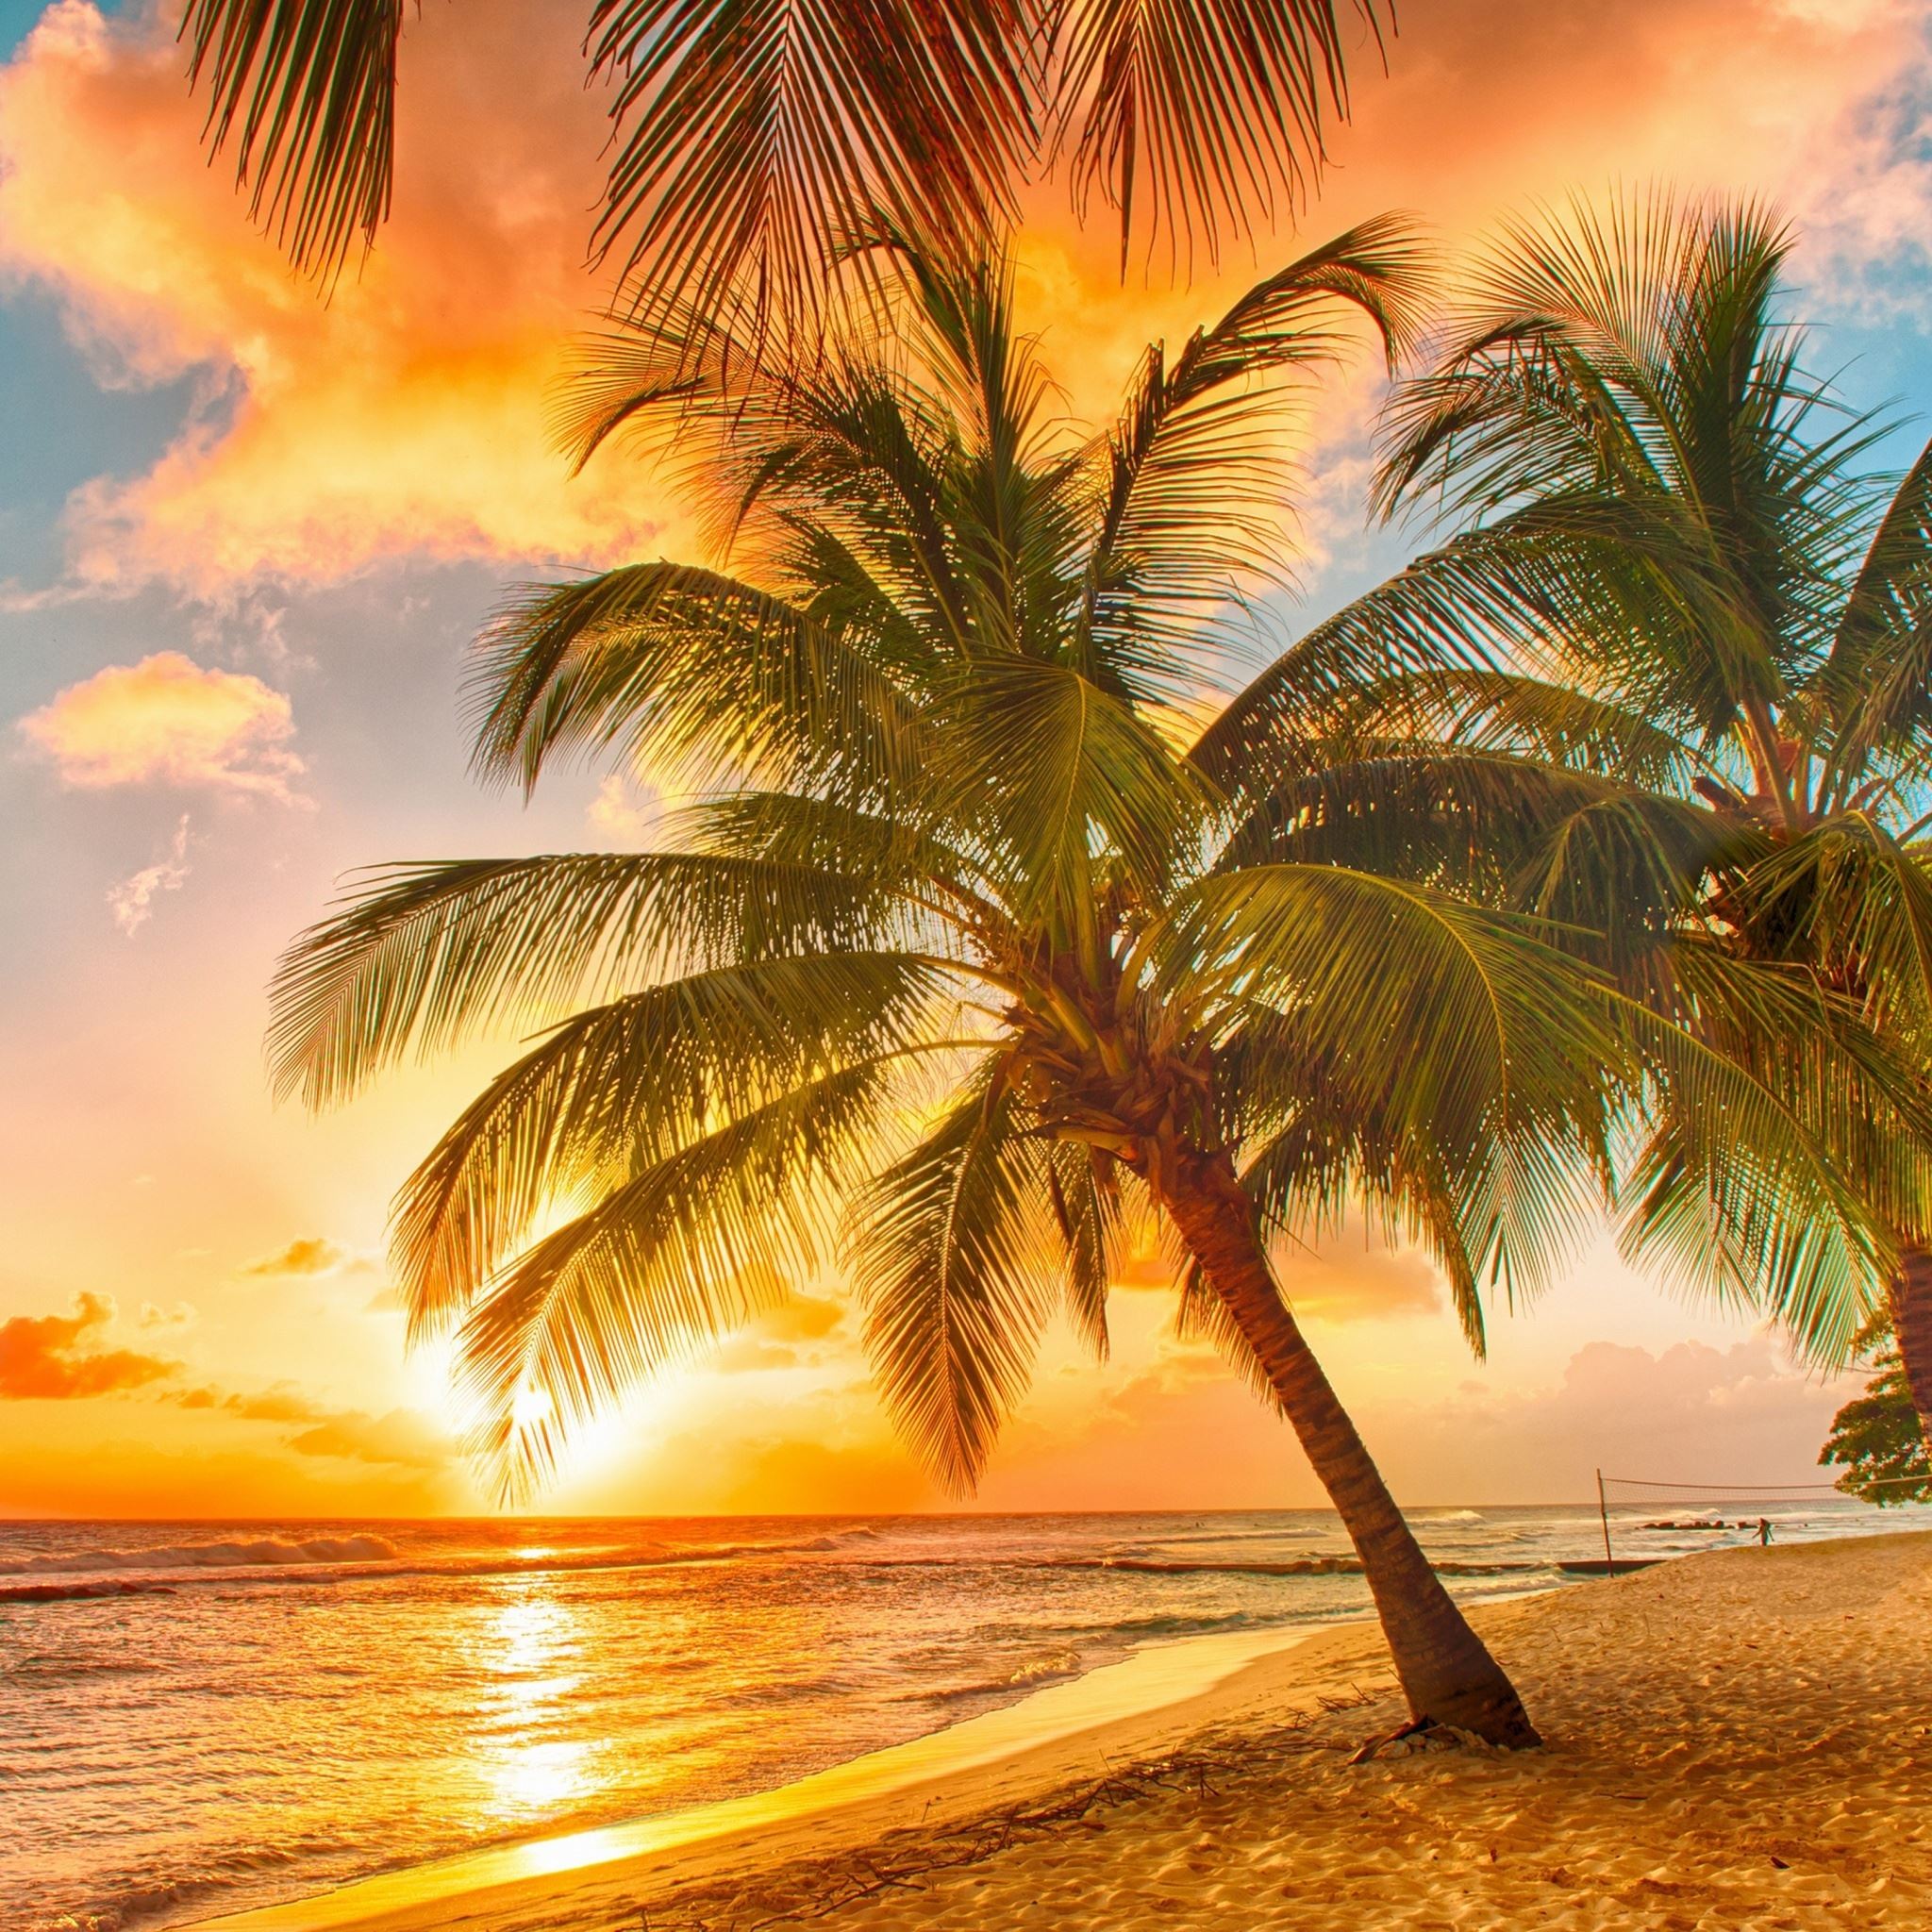 Tropical Beach Palm Trees